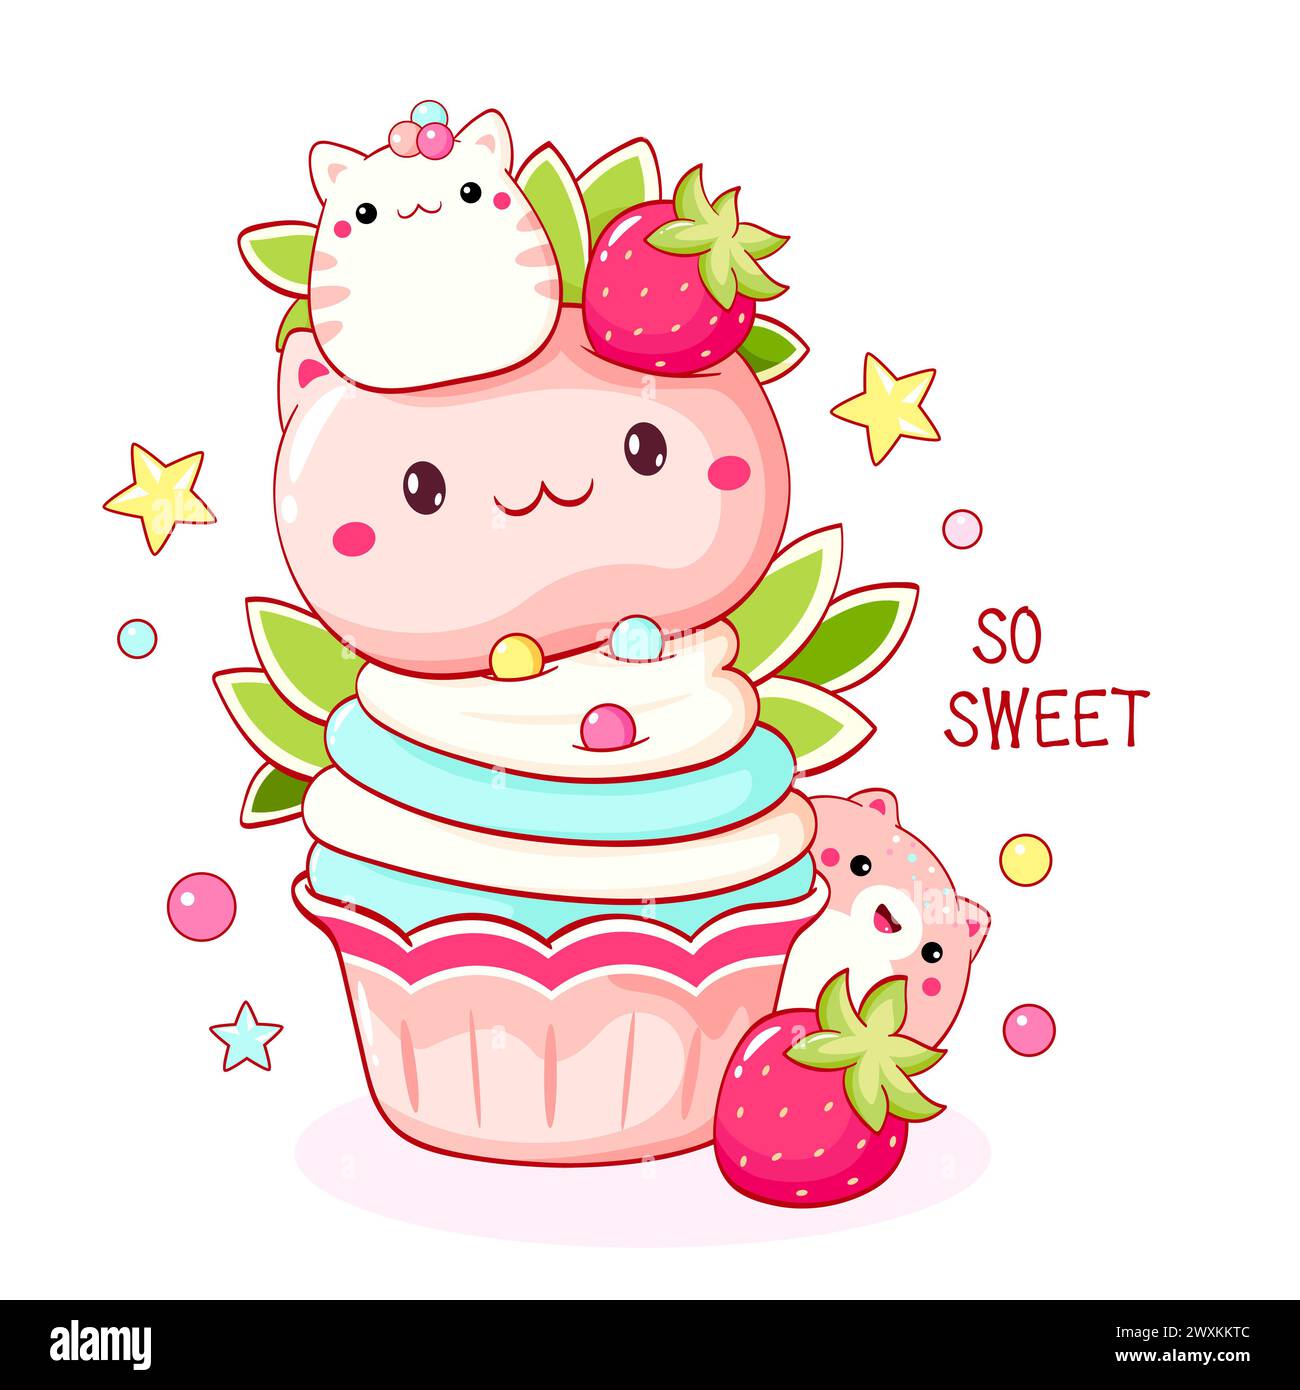 Dessert mignon en forme de chat dans le style kawaii. Gâteau, muffin et cupcake à la crème fouettée et aux baies. Inscription si douce. Peut être utilisé pour l'impression de t-shirts, s Banque D'Images